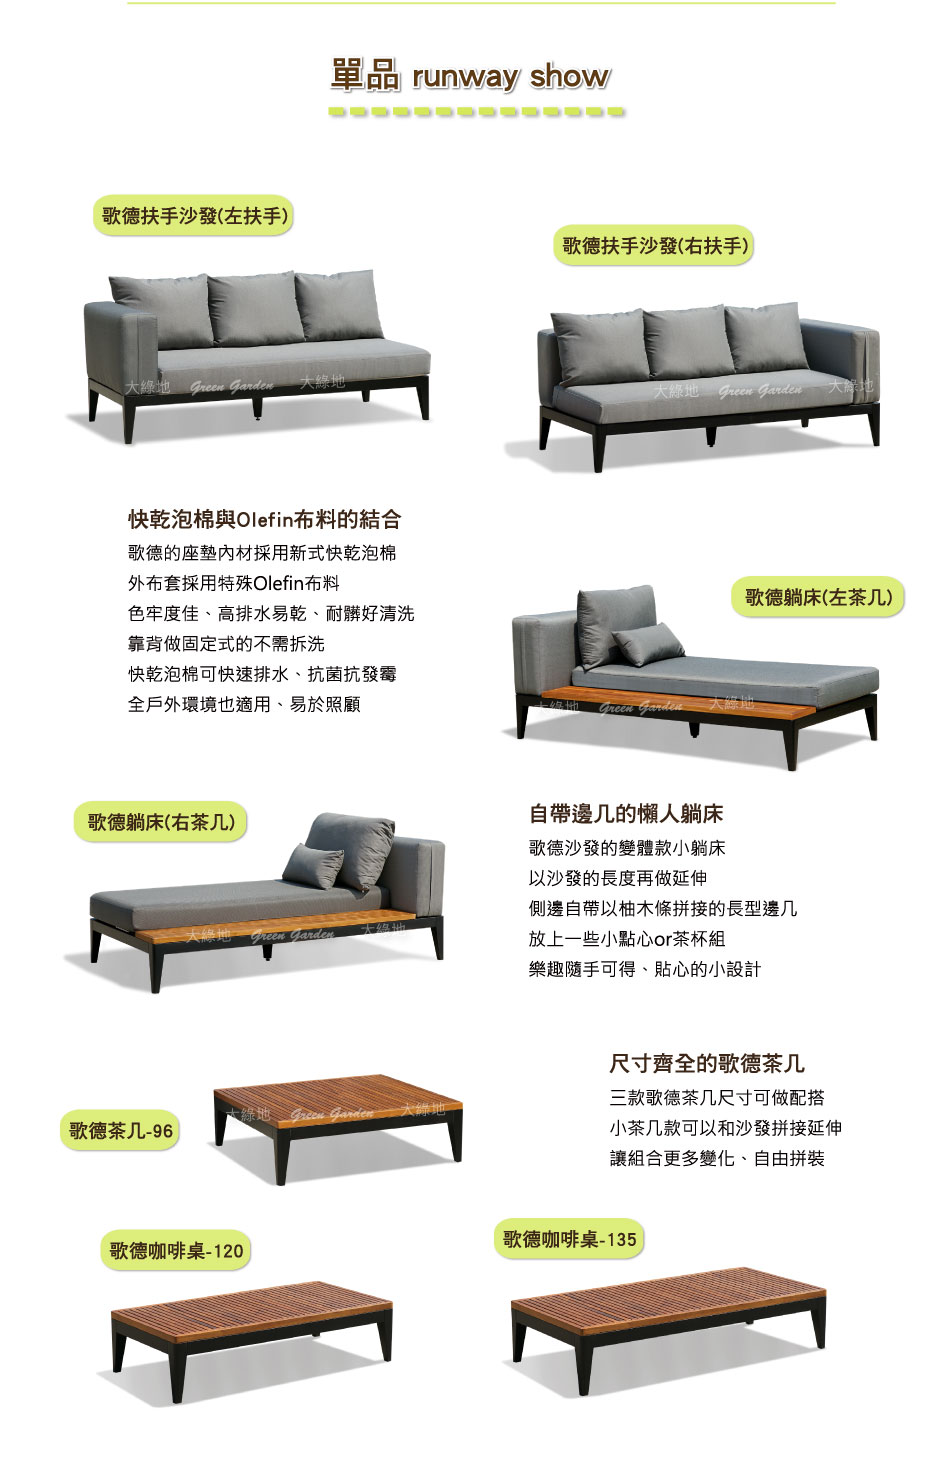 沙發系列產品1